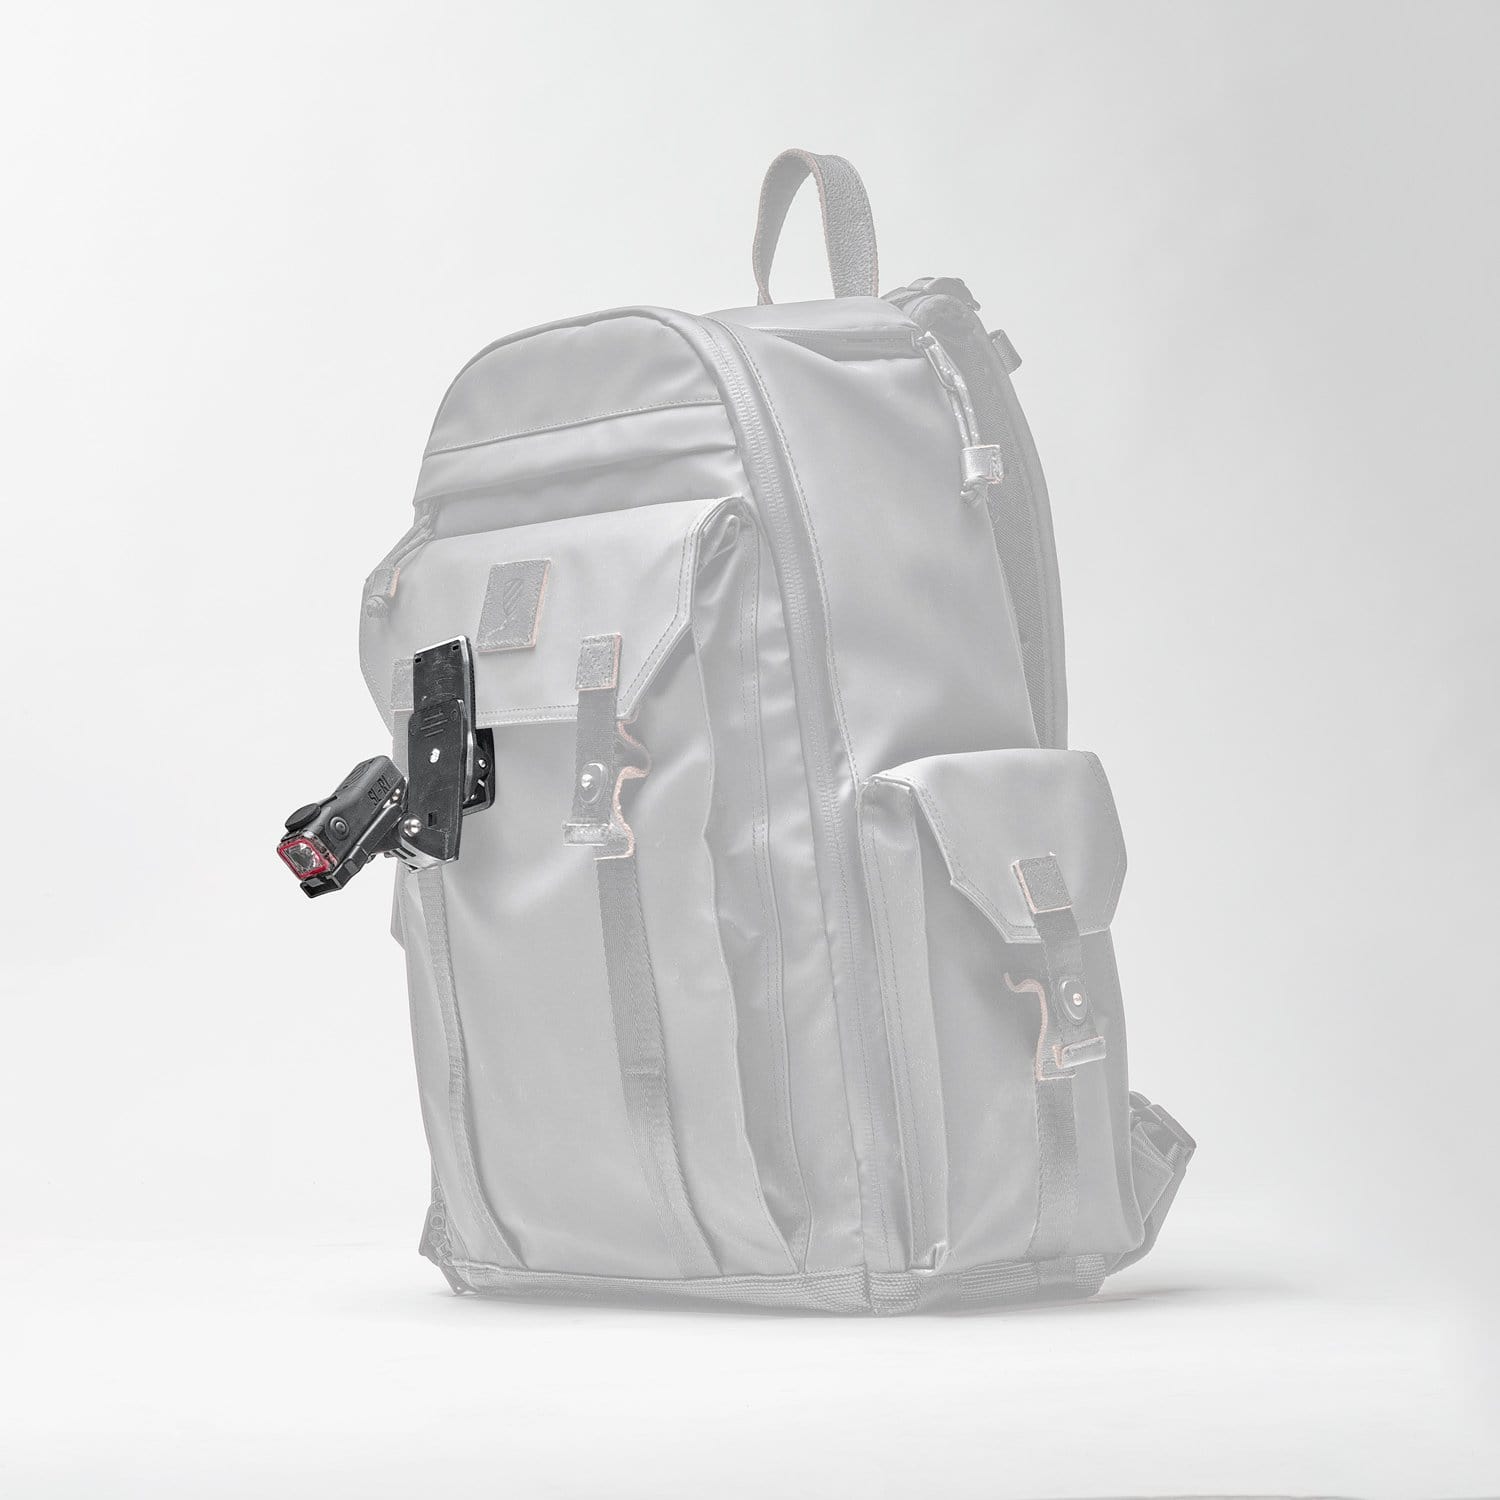 SL-R1 Backpack Single Pack - REVRides